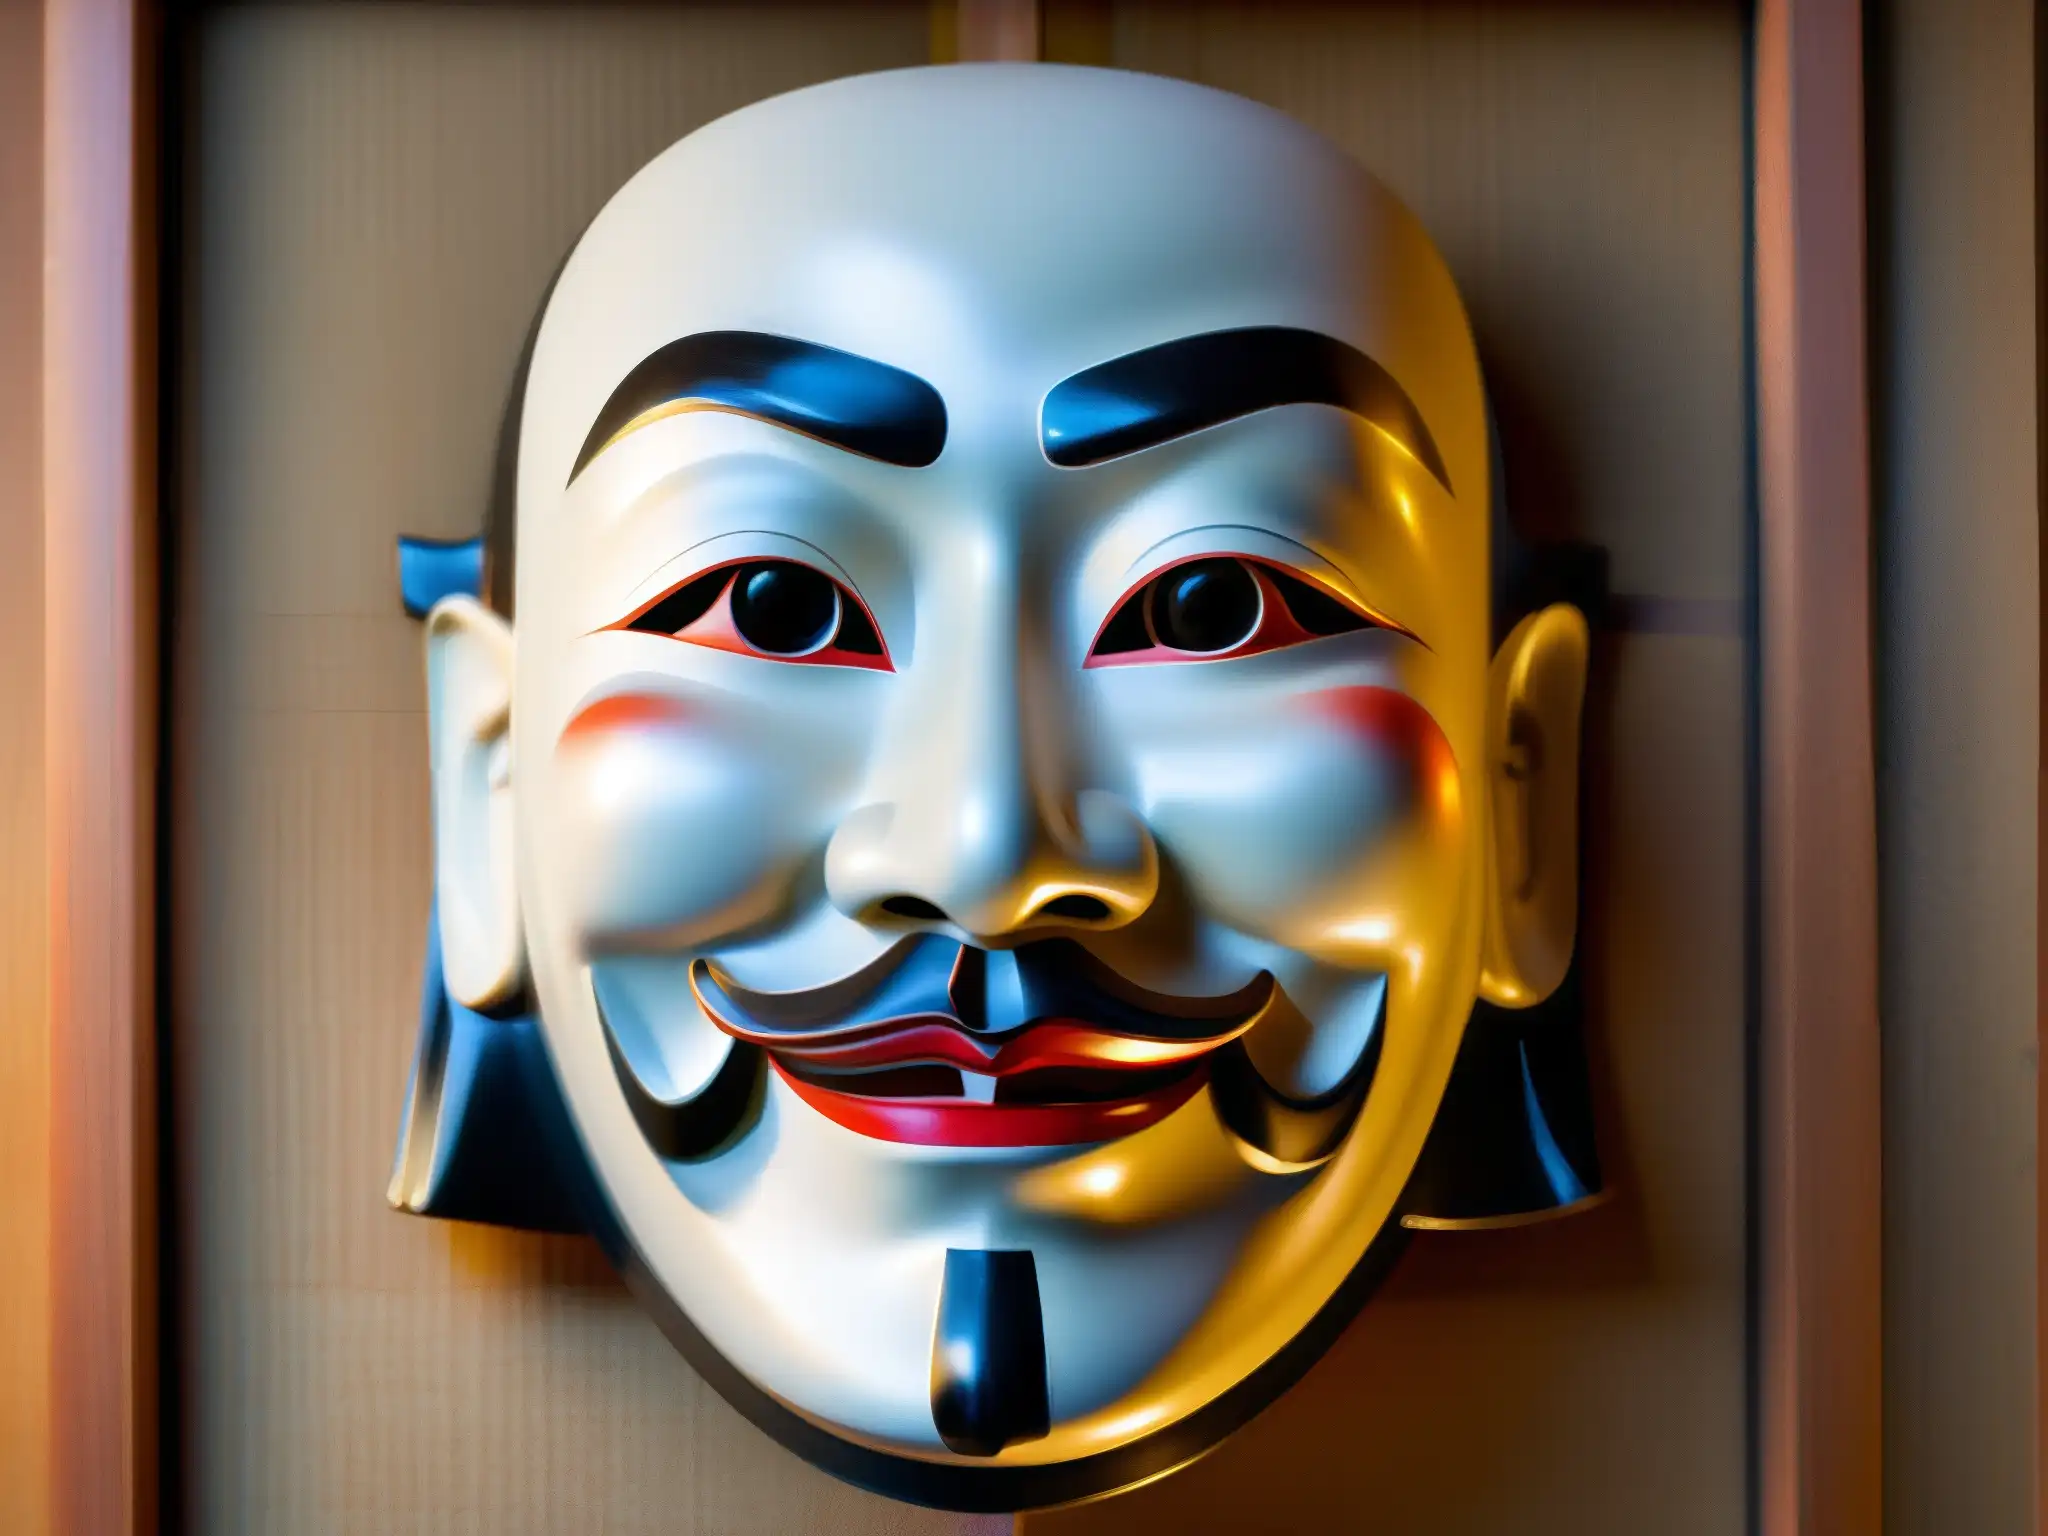 Una máscara tradicional japonesa Noh, tallada a mano con detalles intrincados y una expresión serena y enigmática